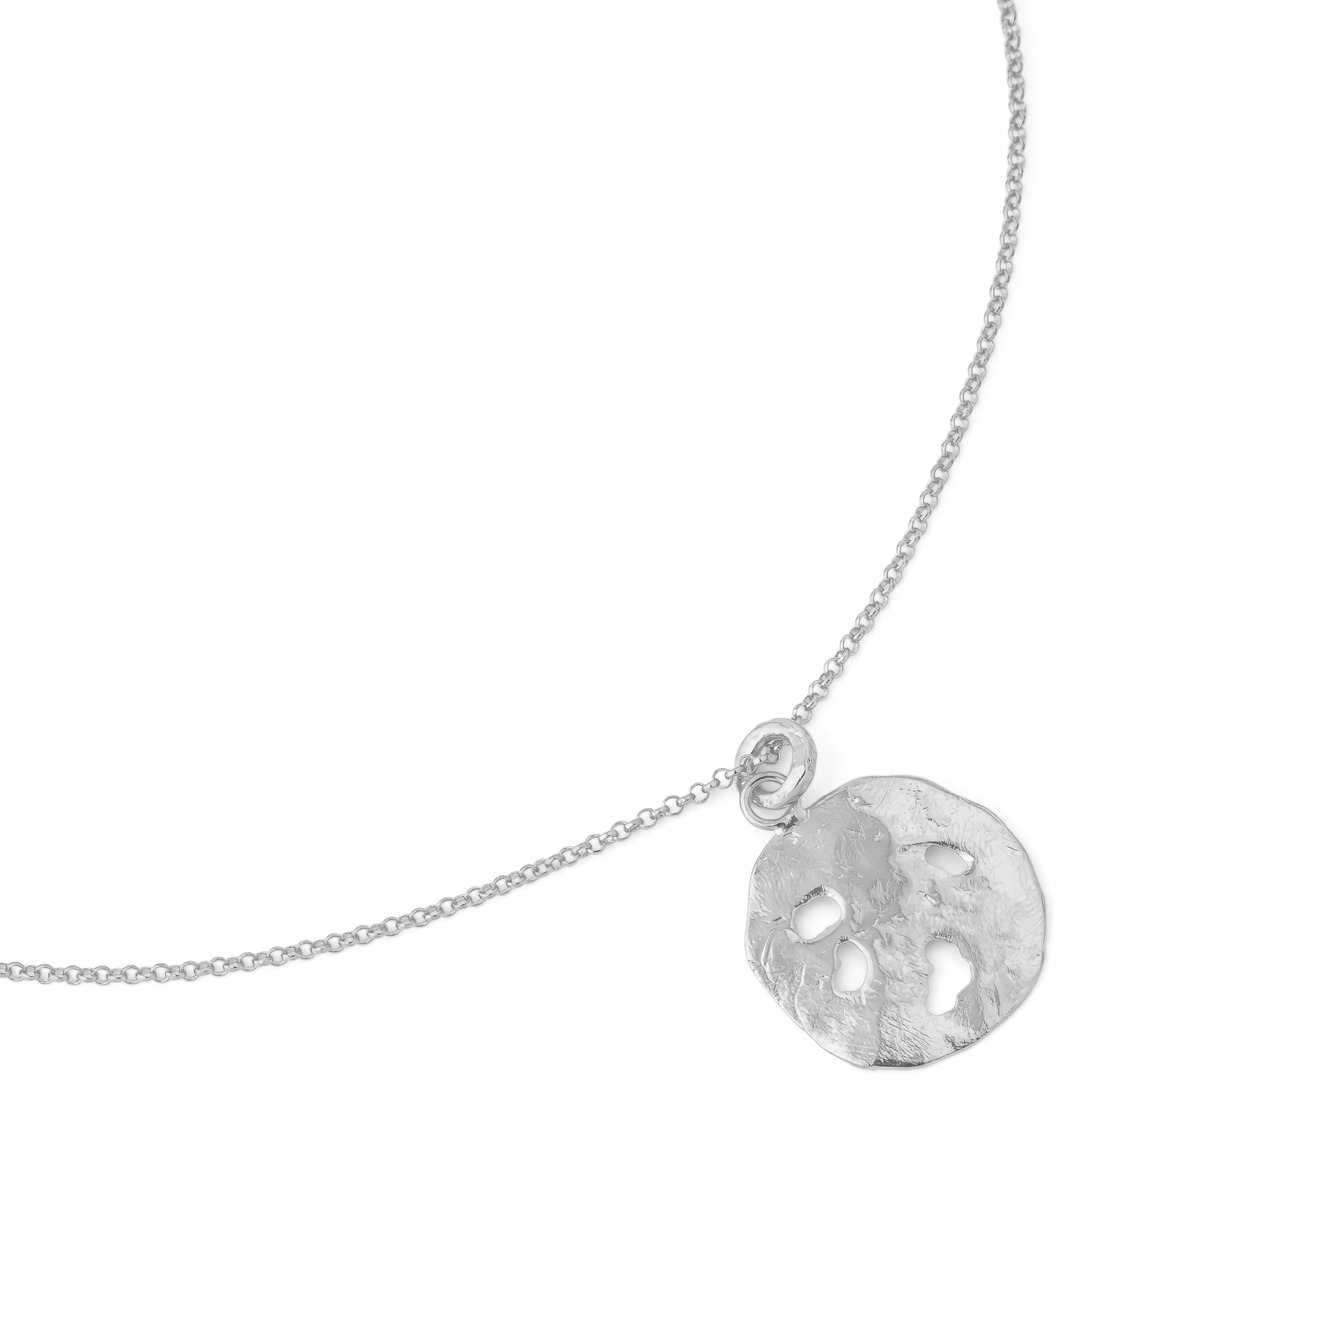 Sevenworlds Подвеска Pura Vida Medallion из бронзы с серебряным покрытием sevenworlds кольцо из бронзы с серебряным покрытием rhombus